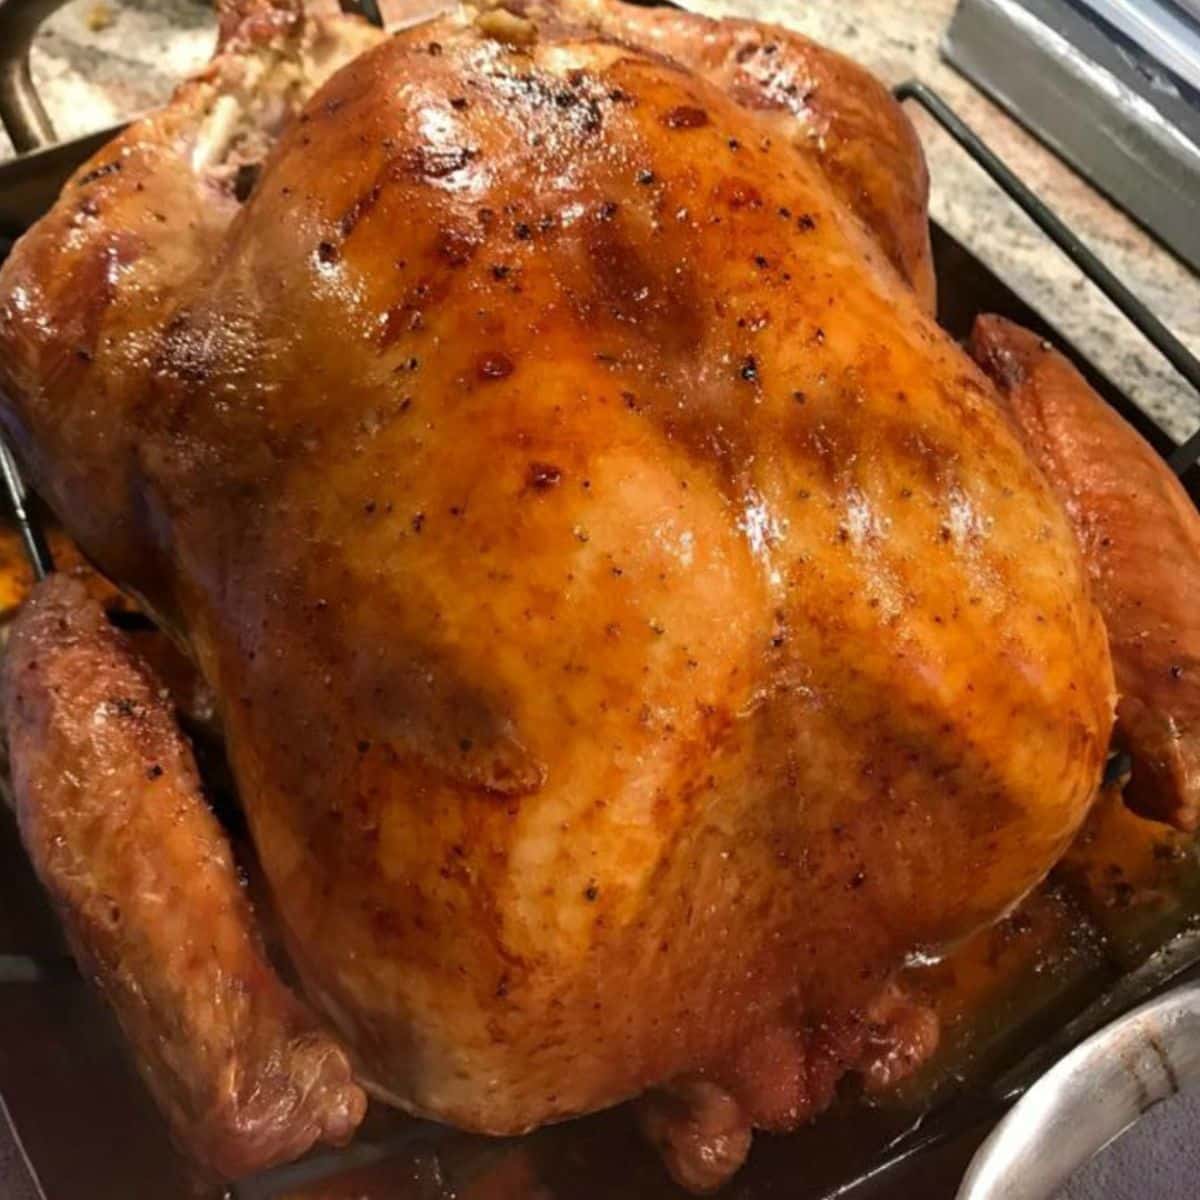 https://walkingonsunshinerecipes.com/wp-content/uploads/2022/11/FEATURED-NEW-SIZE-roast-turkey.jpg